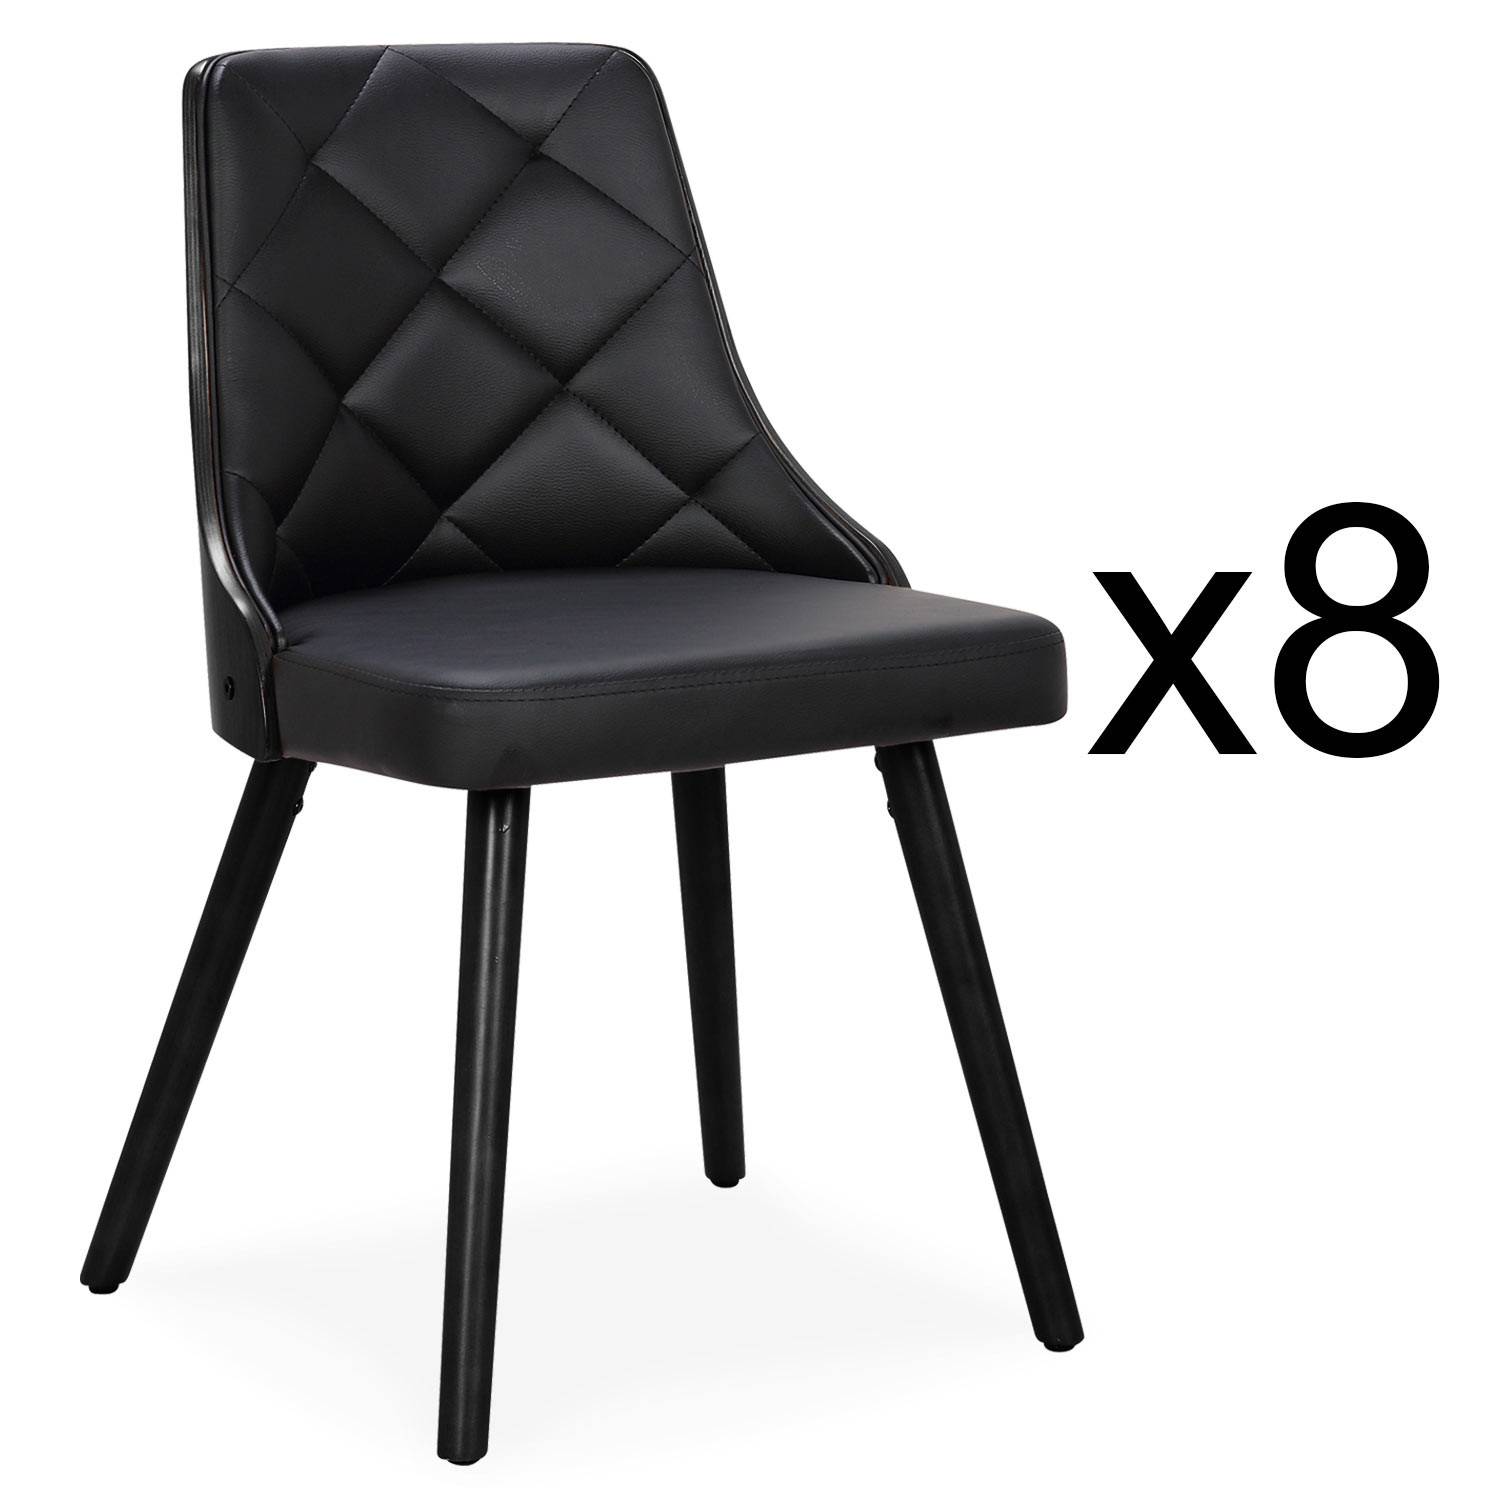 Lote de 8 sillas escandinavas Lalix de madera negra y polipiel negra